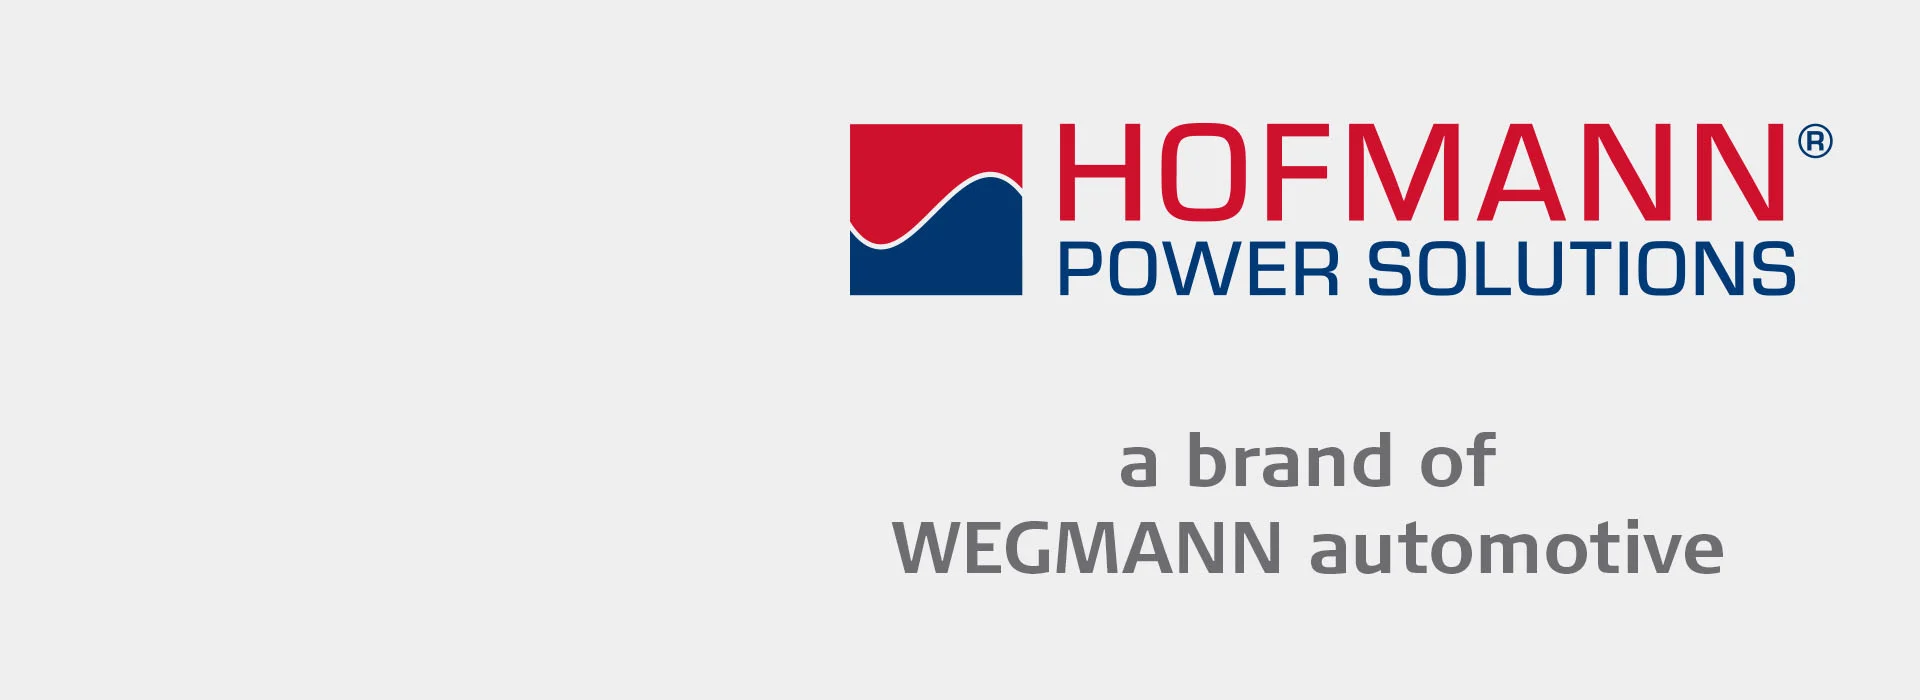 HOFMANN Power Solutions Banner